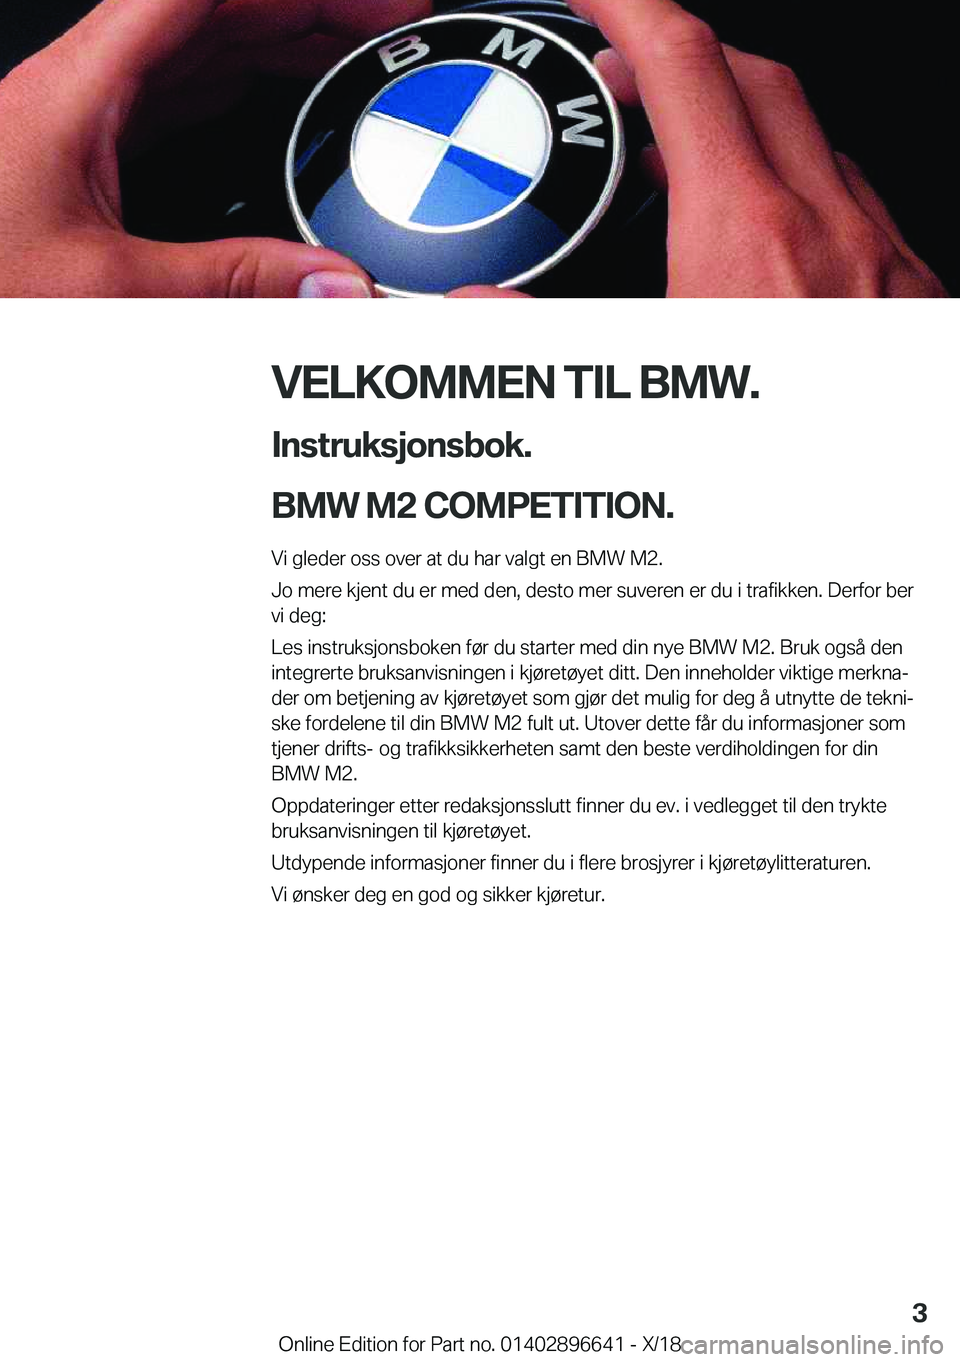 BMW M2 2019  InstruksjonsbØker (in Norwegian) �V�E�L�K�O�M�M�E�N��T�I�L��B�M�W�.�I�n�s�t�r�u�k�s�j�o�n�s�b�o�k�.
�B�M�W��M�2��C�O�M�P�E�T�I�T�I�O�N�.�
�V�i��g�l�e�d�e�r��o�s�s��o�v�e�r��a�t��d�u��h�a�r��v�a�l�g�t��e�n��B�M�W��M�2�.